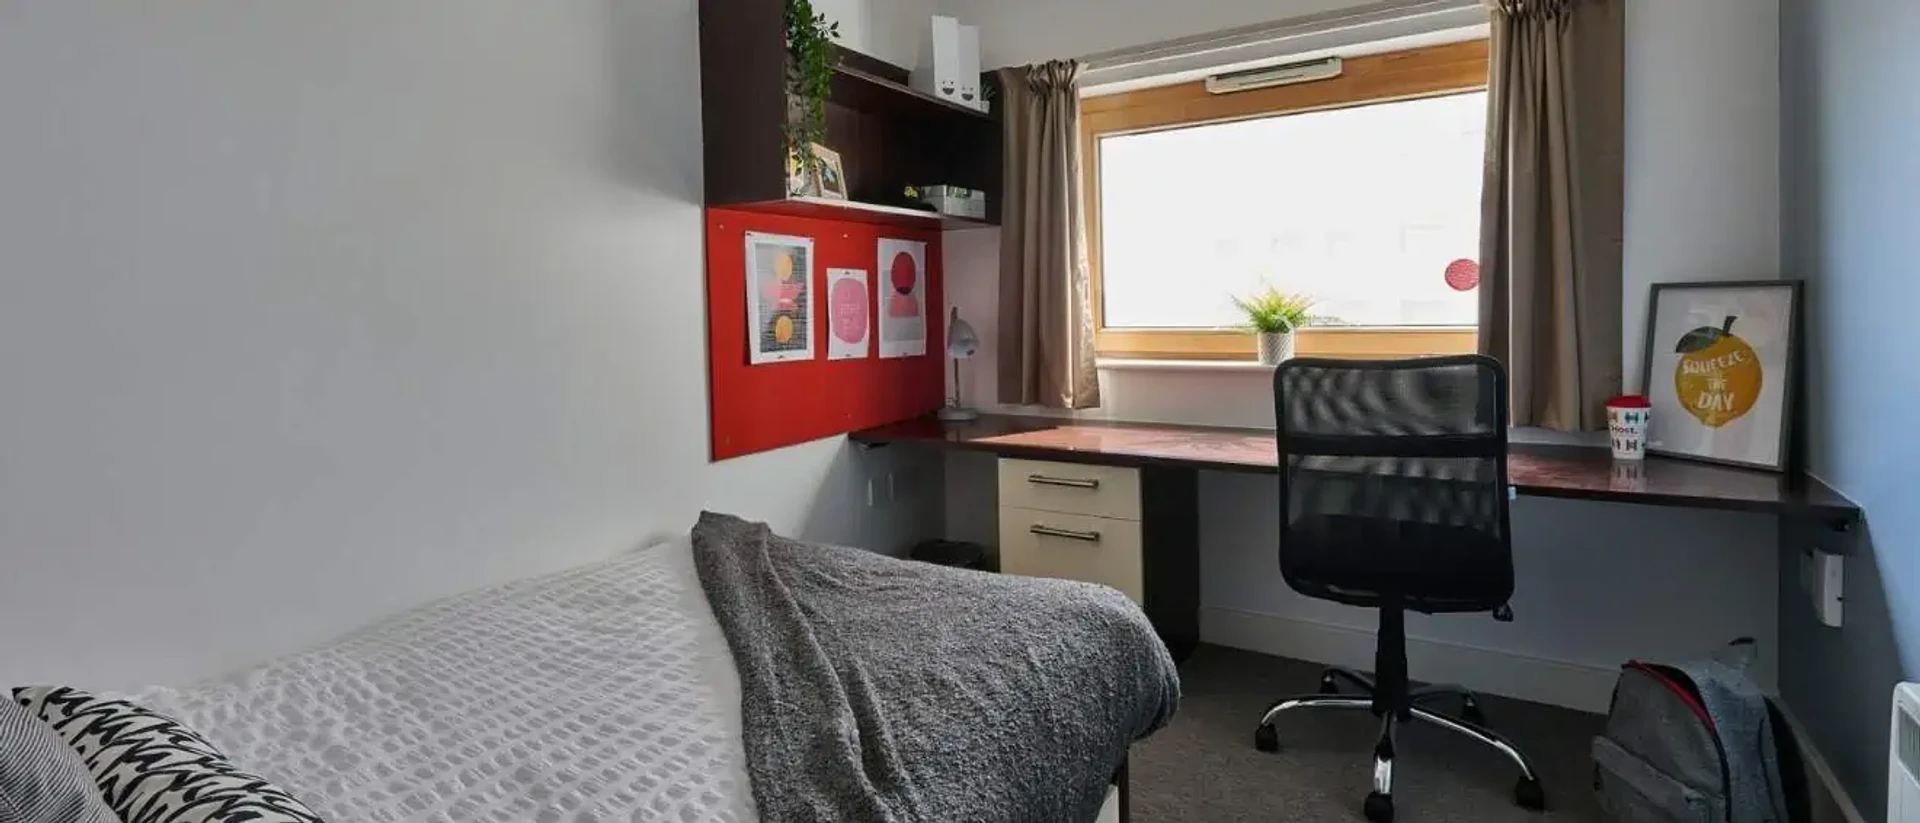 Zimmer mit Doppelbett zu vermieten Wolverhampton